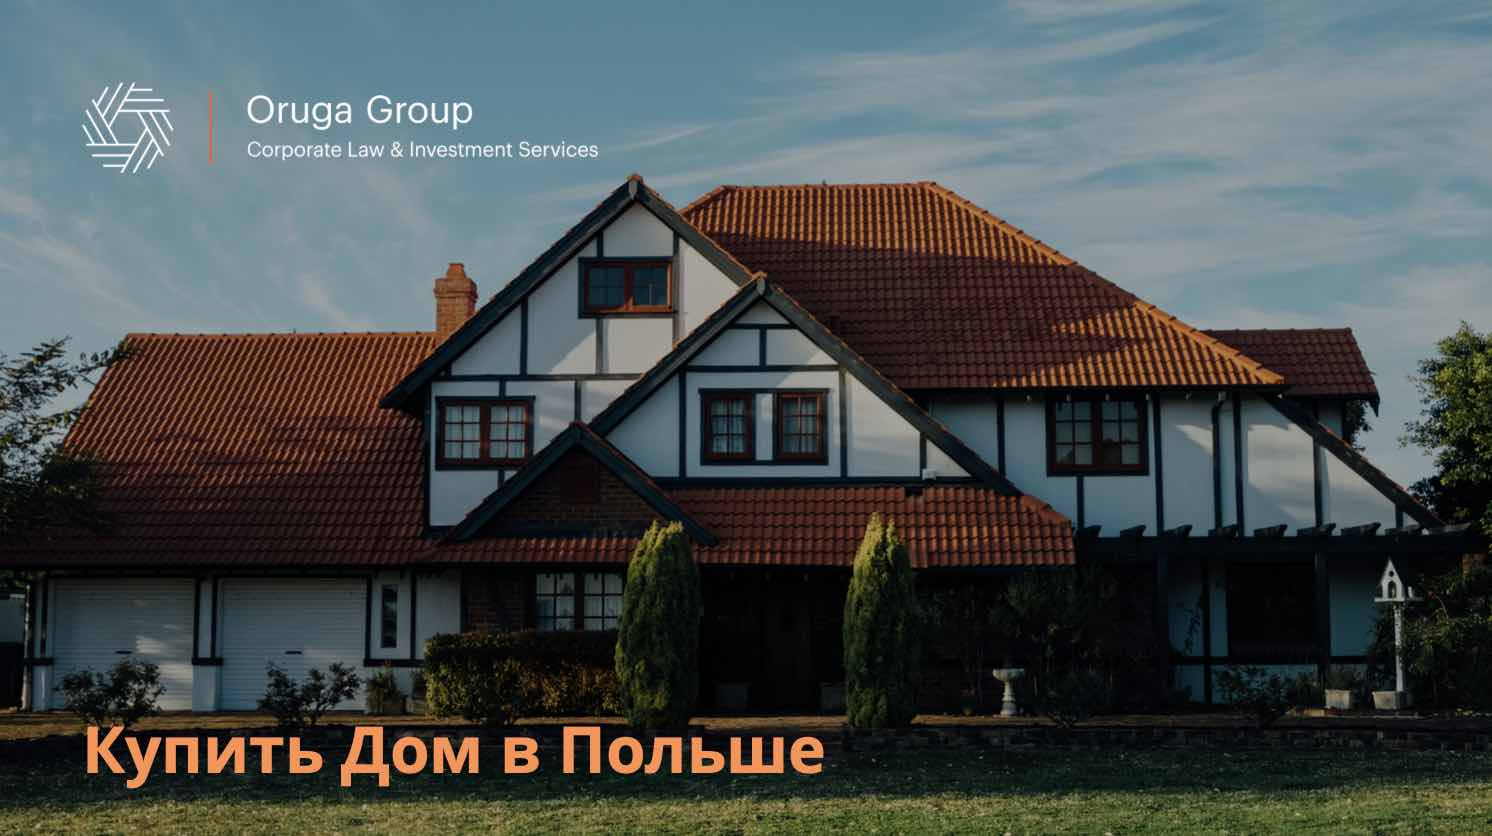 Купить дом в варшаве польша недвижимость в словакии недорого с указанием цены